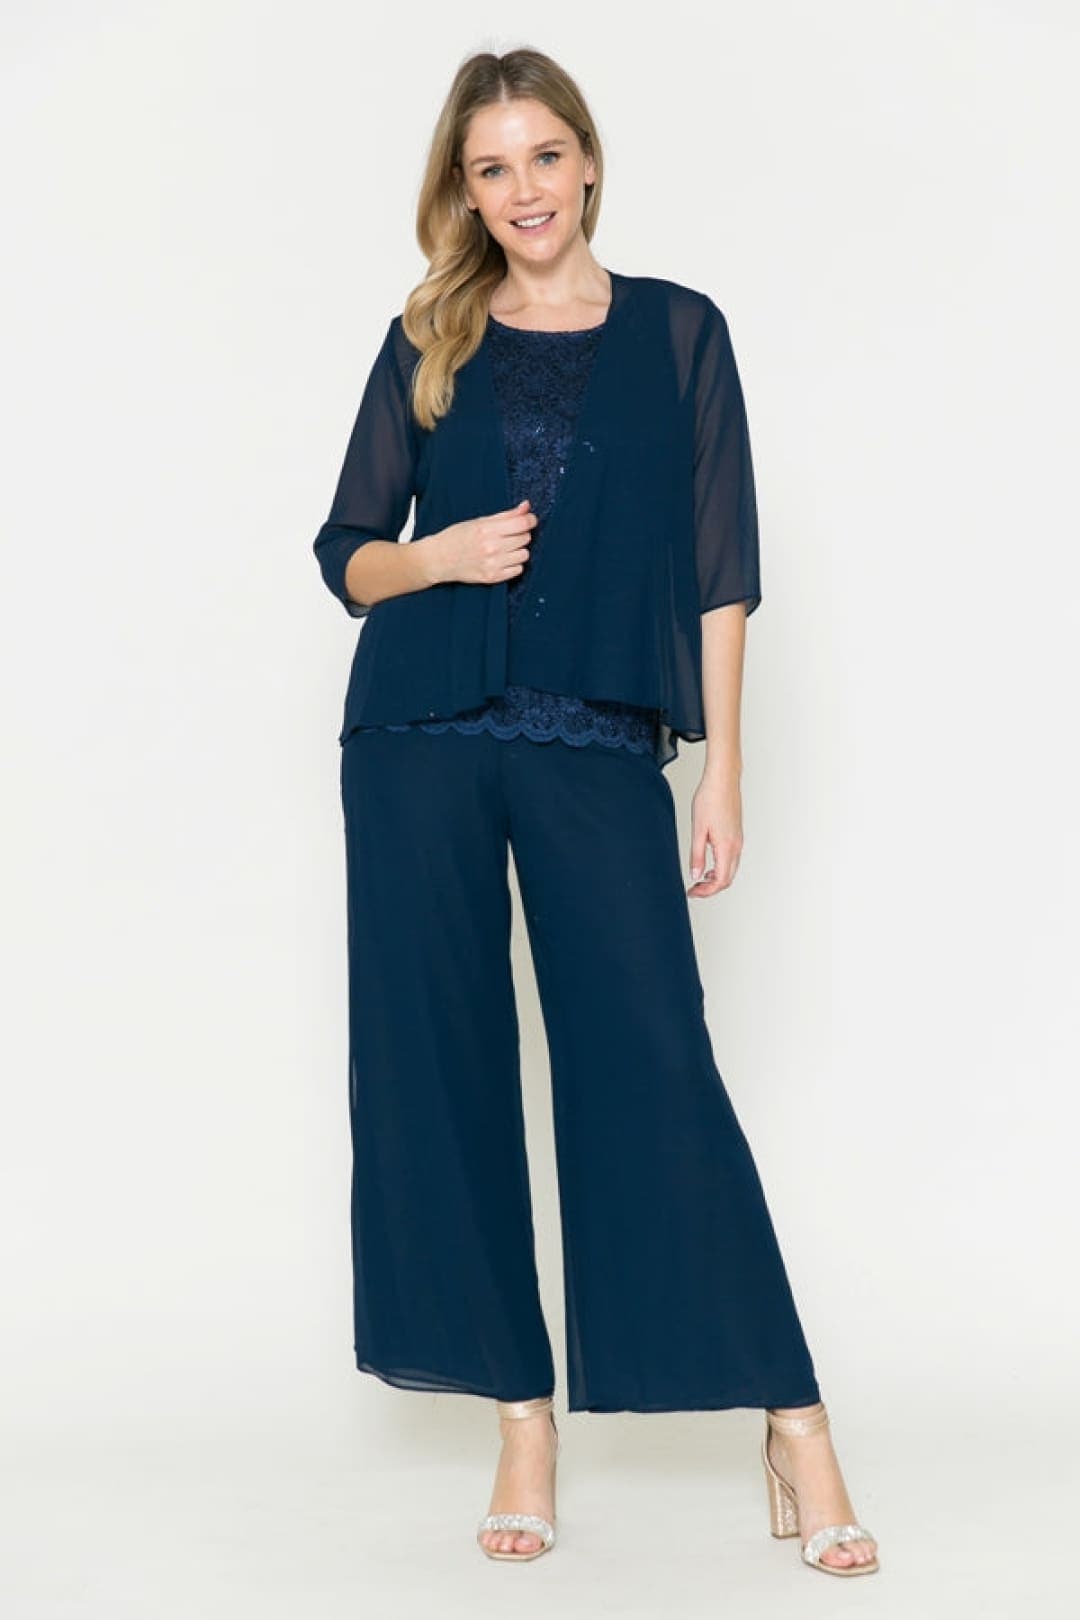 Royal Blue Pantsuit for Women,business Women Suit With Vest, Blue Formal  3-piece Suit Set Womens, Wedding Guest Suit -  Norway